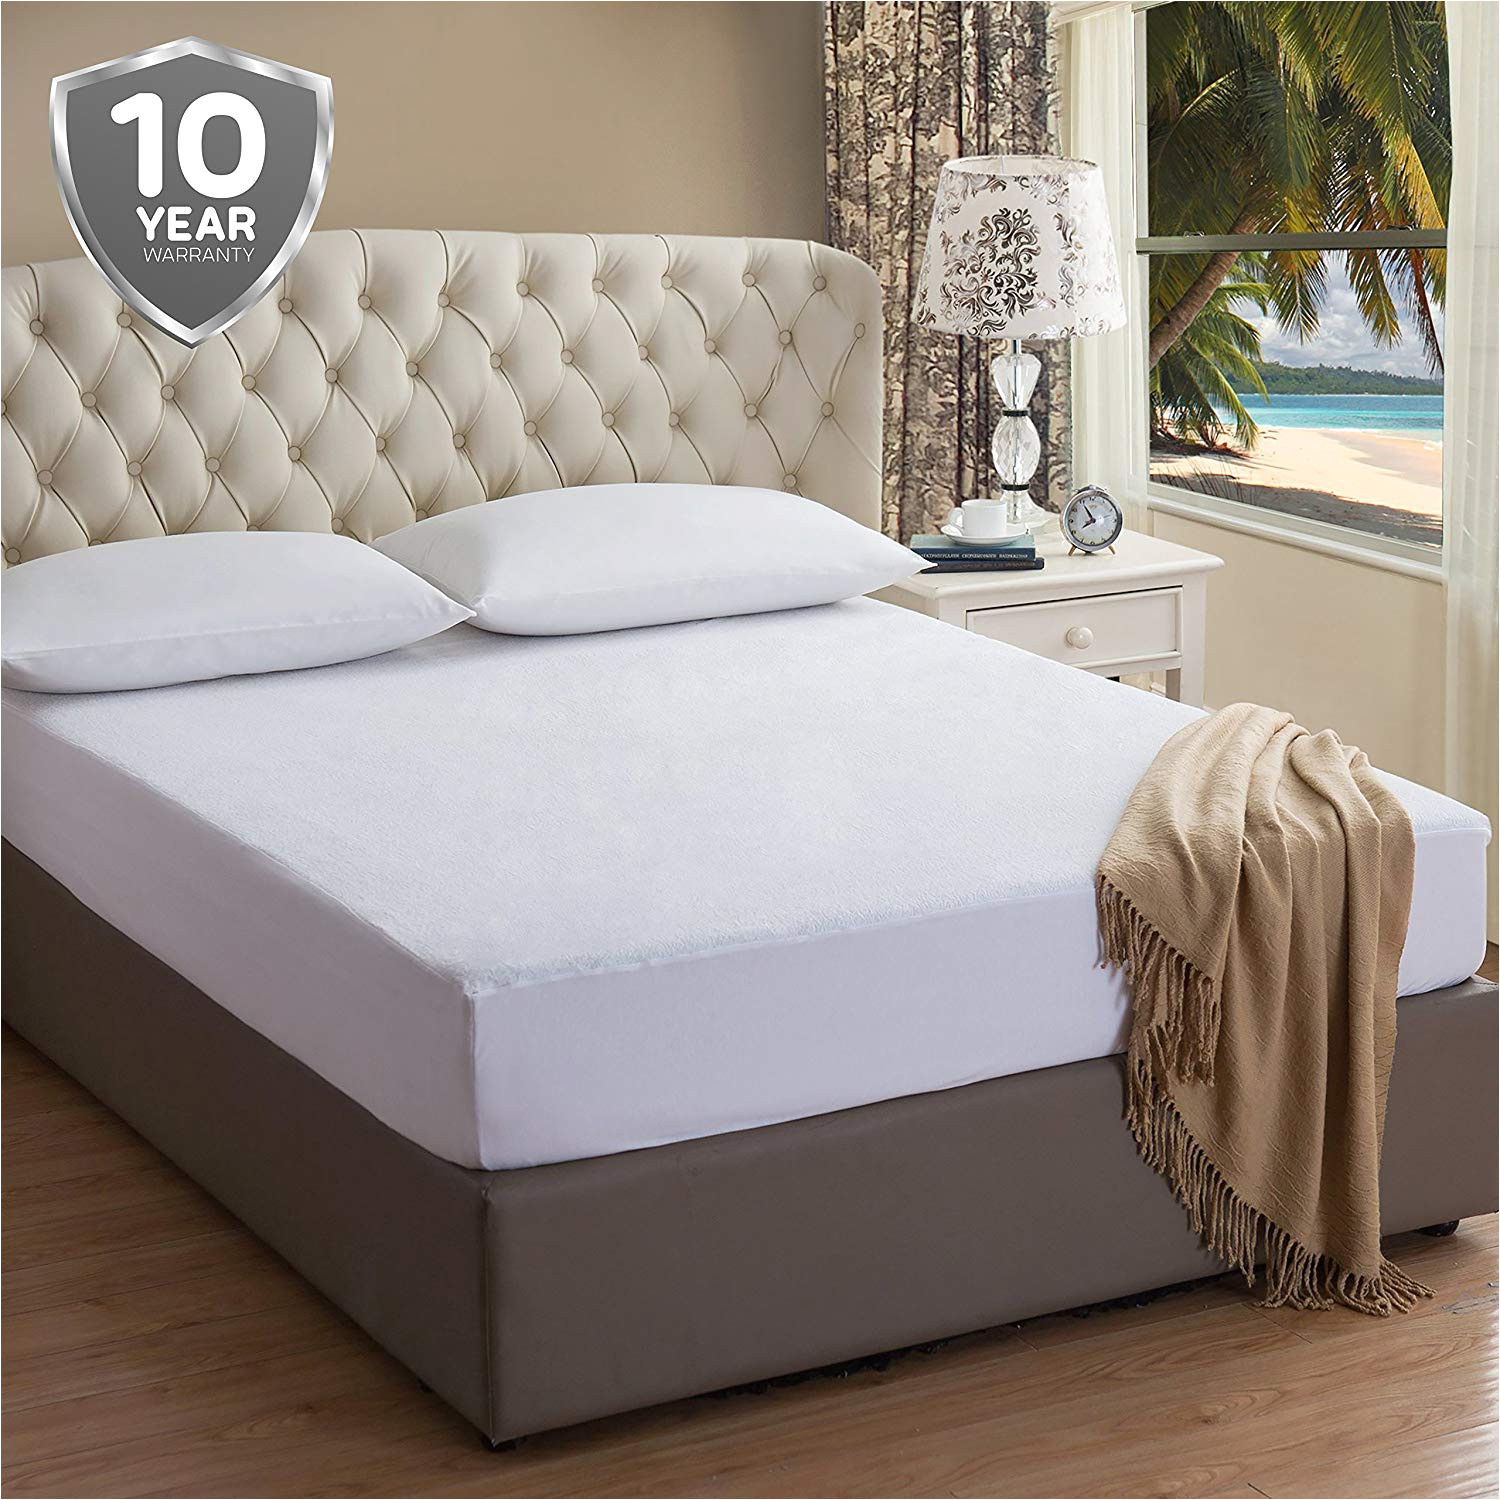 amazon com mattress topper by caretta mattress pad mattress protector mattress cover waterproof mattress pad hypoallergenic waterproof terry cotton